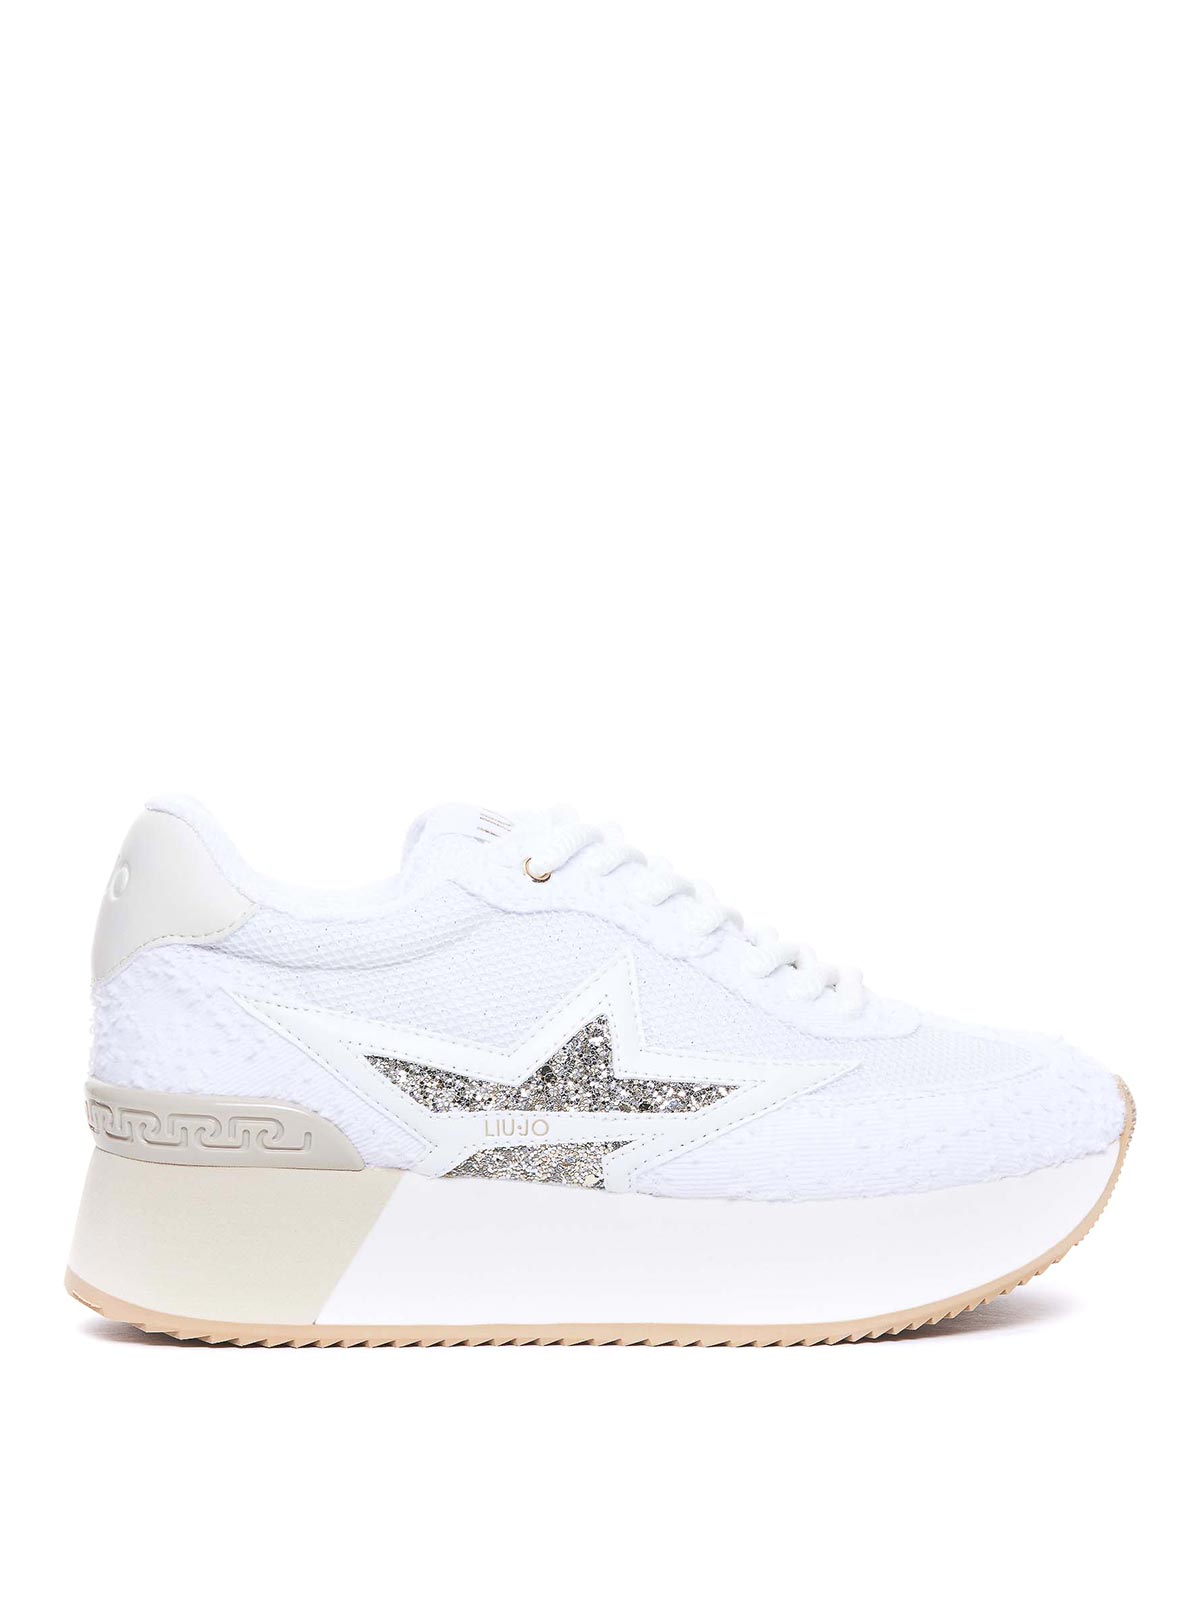 Liu •jo Dreamy Platform Sneakers In White